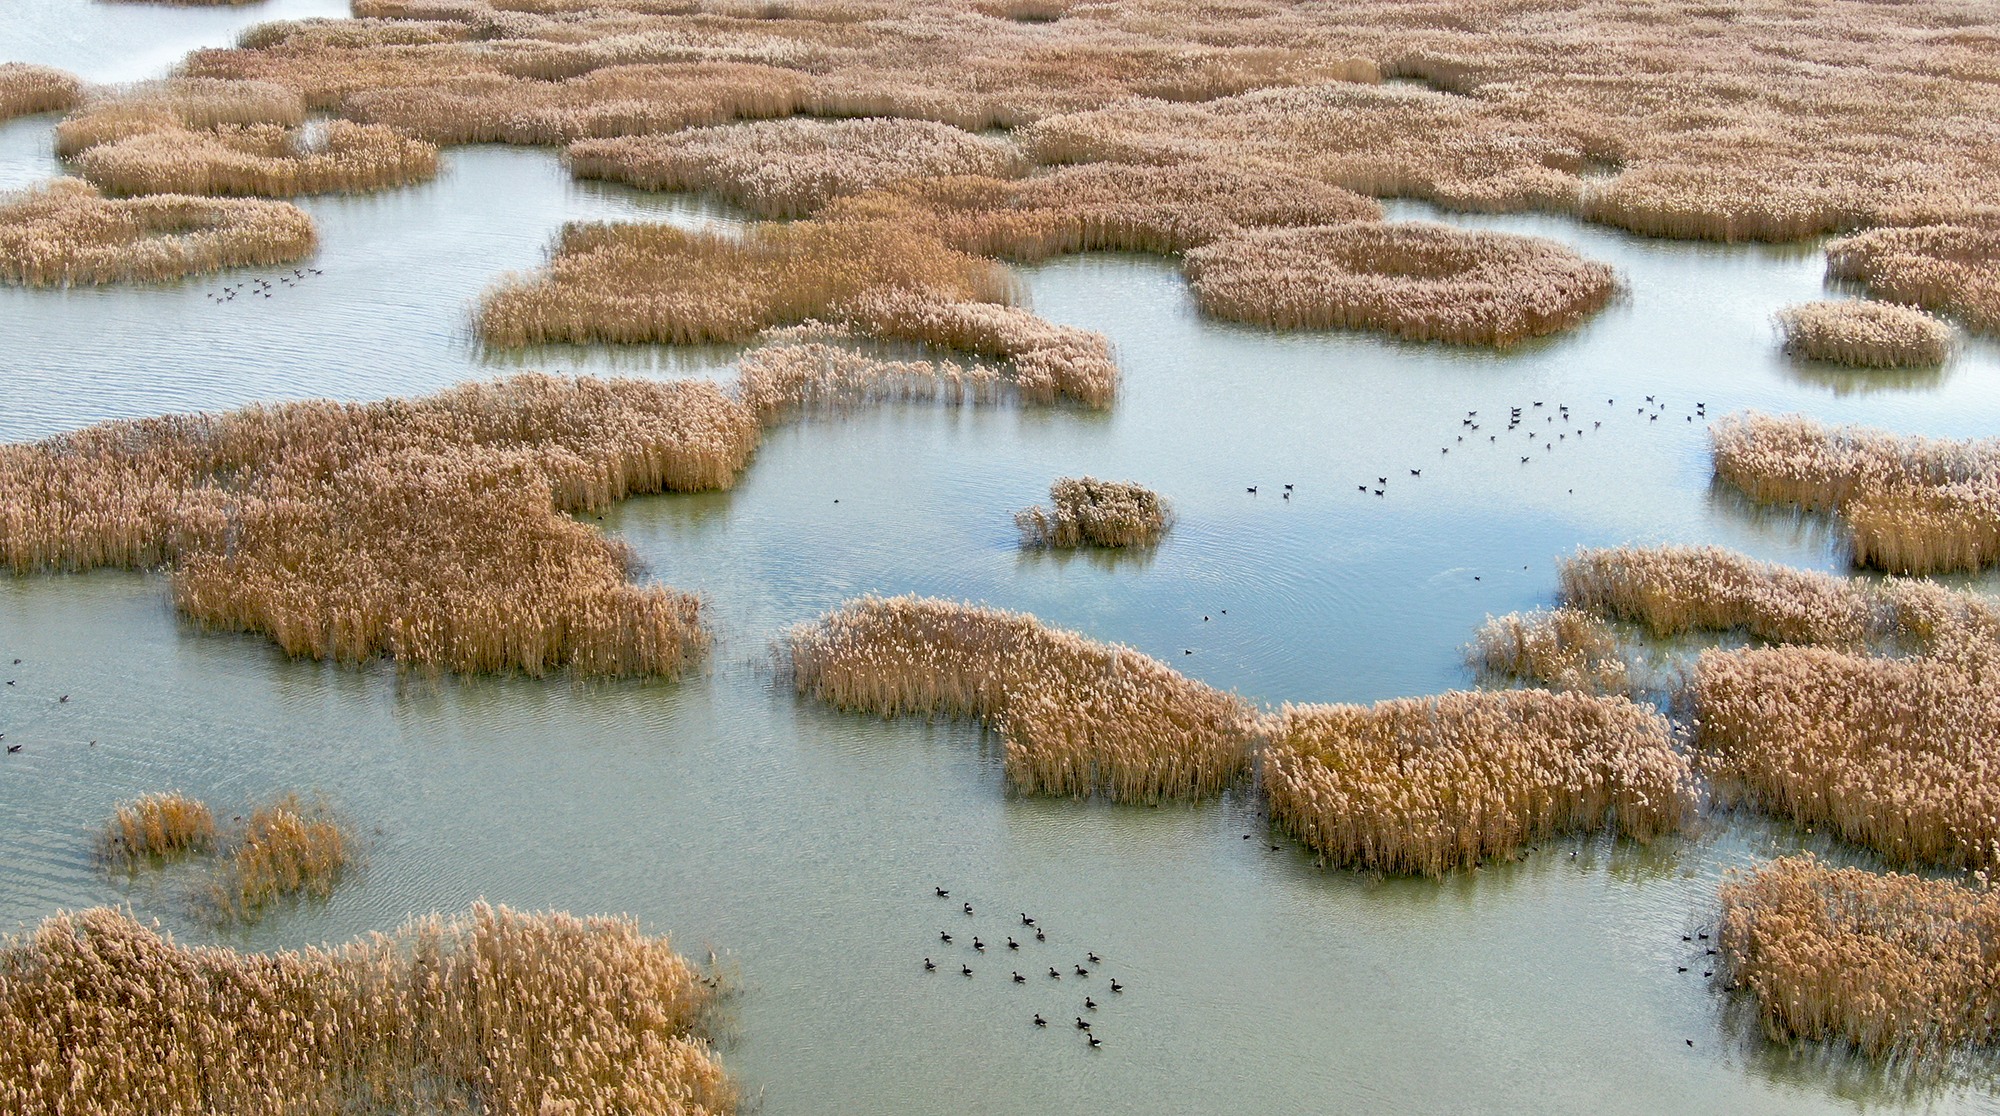 吉林中西湿地保护区 今秋迎来候鸟停歇高峰——湿地生物多样性保护成效显著